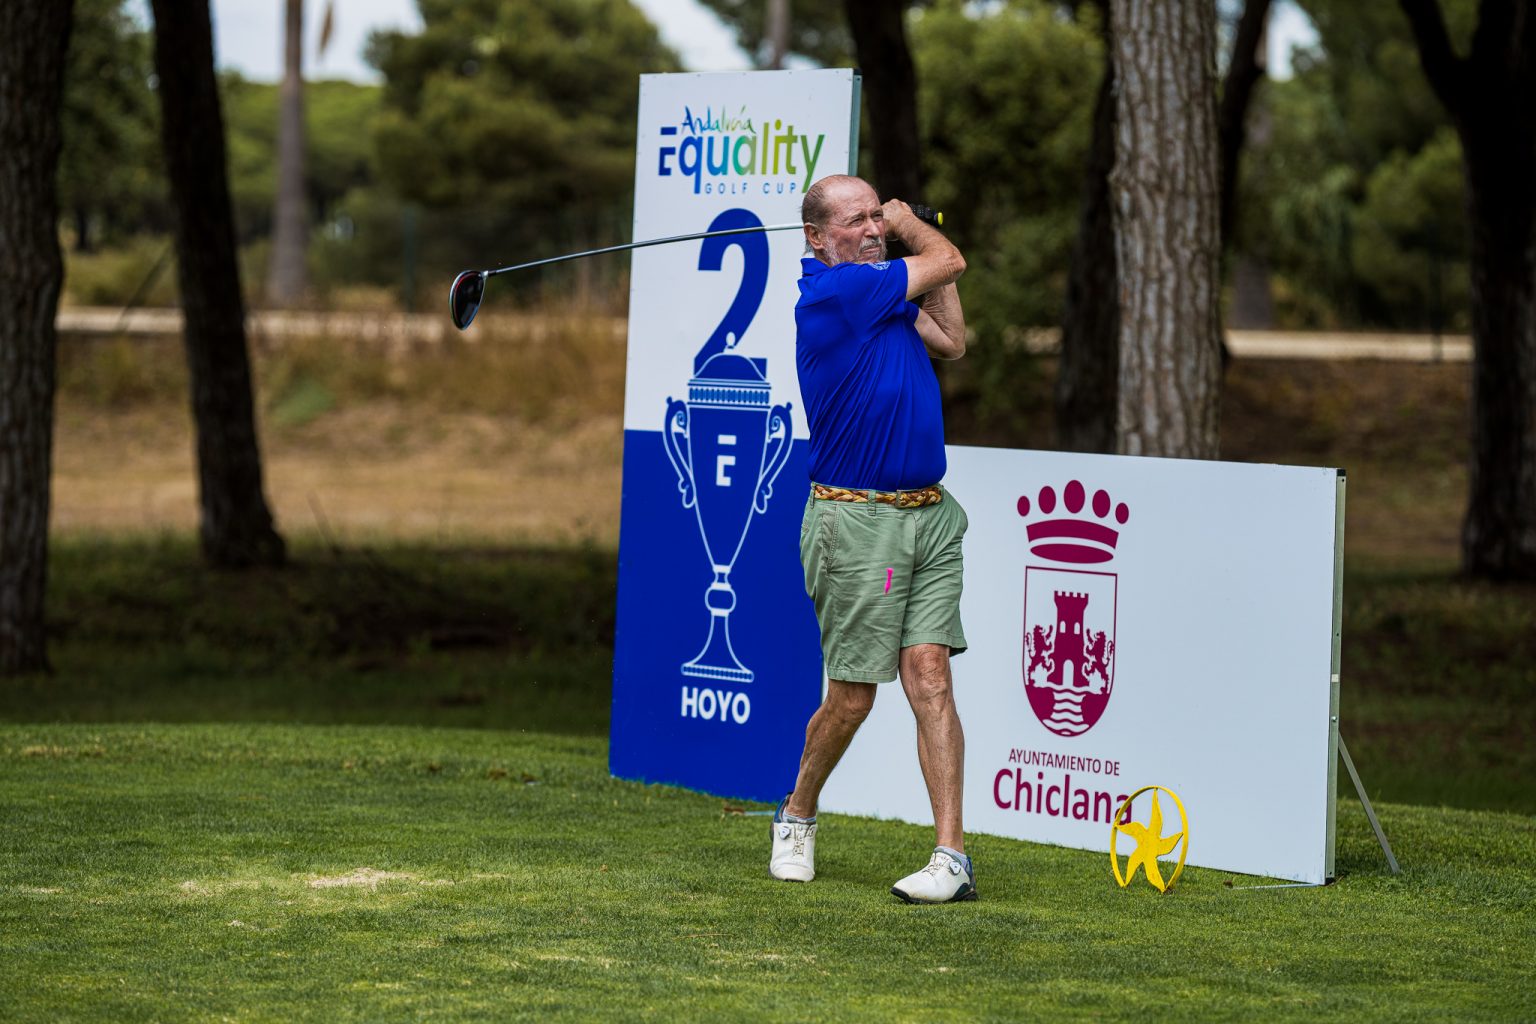 Máster Final del Circuito Solidario Andalucía Equality Golf Cup 05